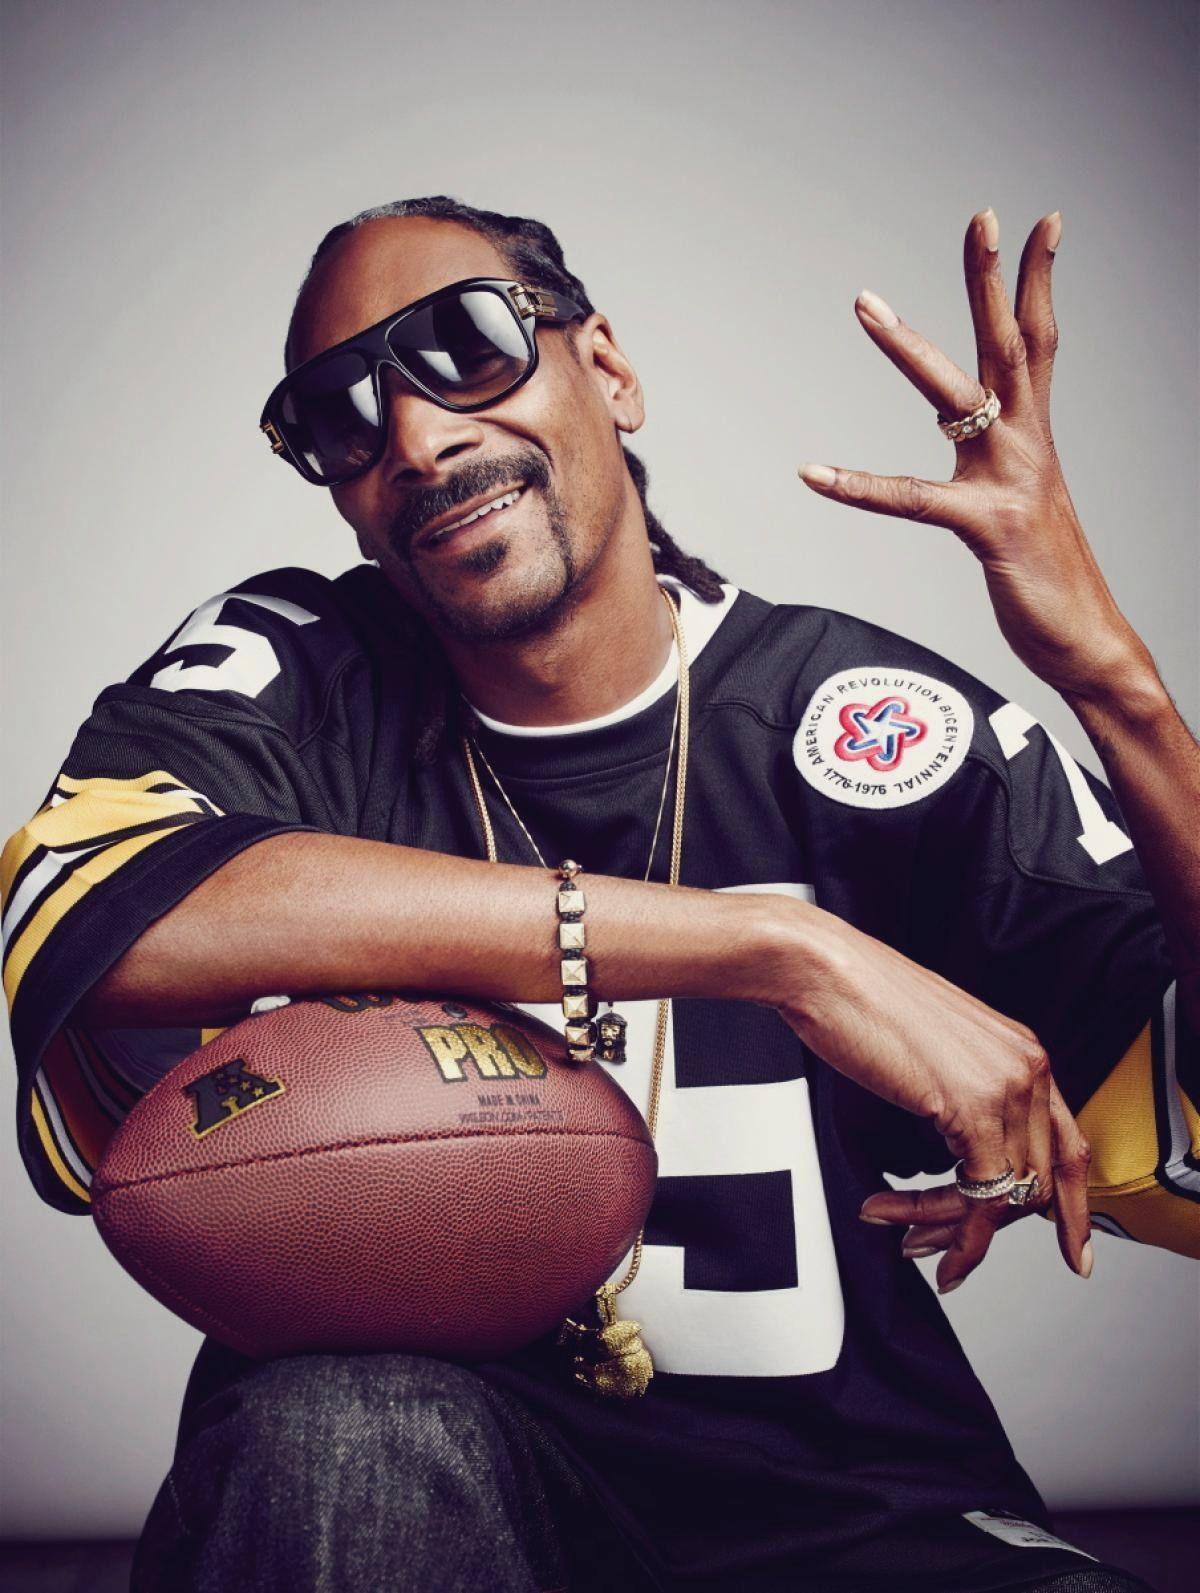 Snoop Dogg Cartoon Wallpapers - Top Free Snoop Dogg Cartoon Backgrounds